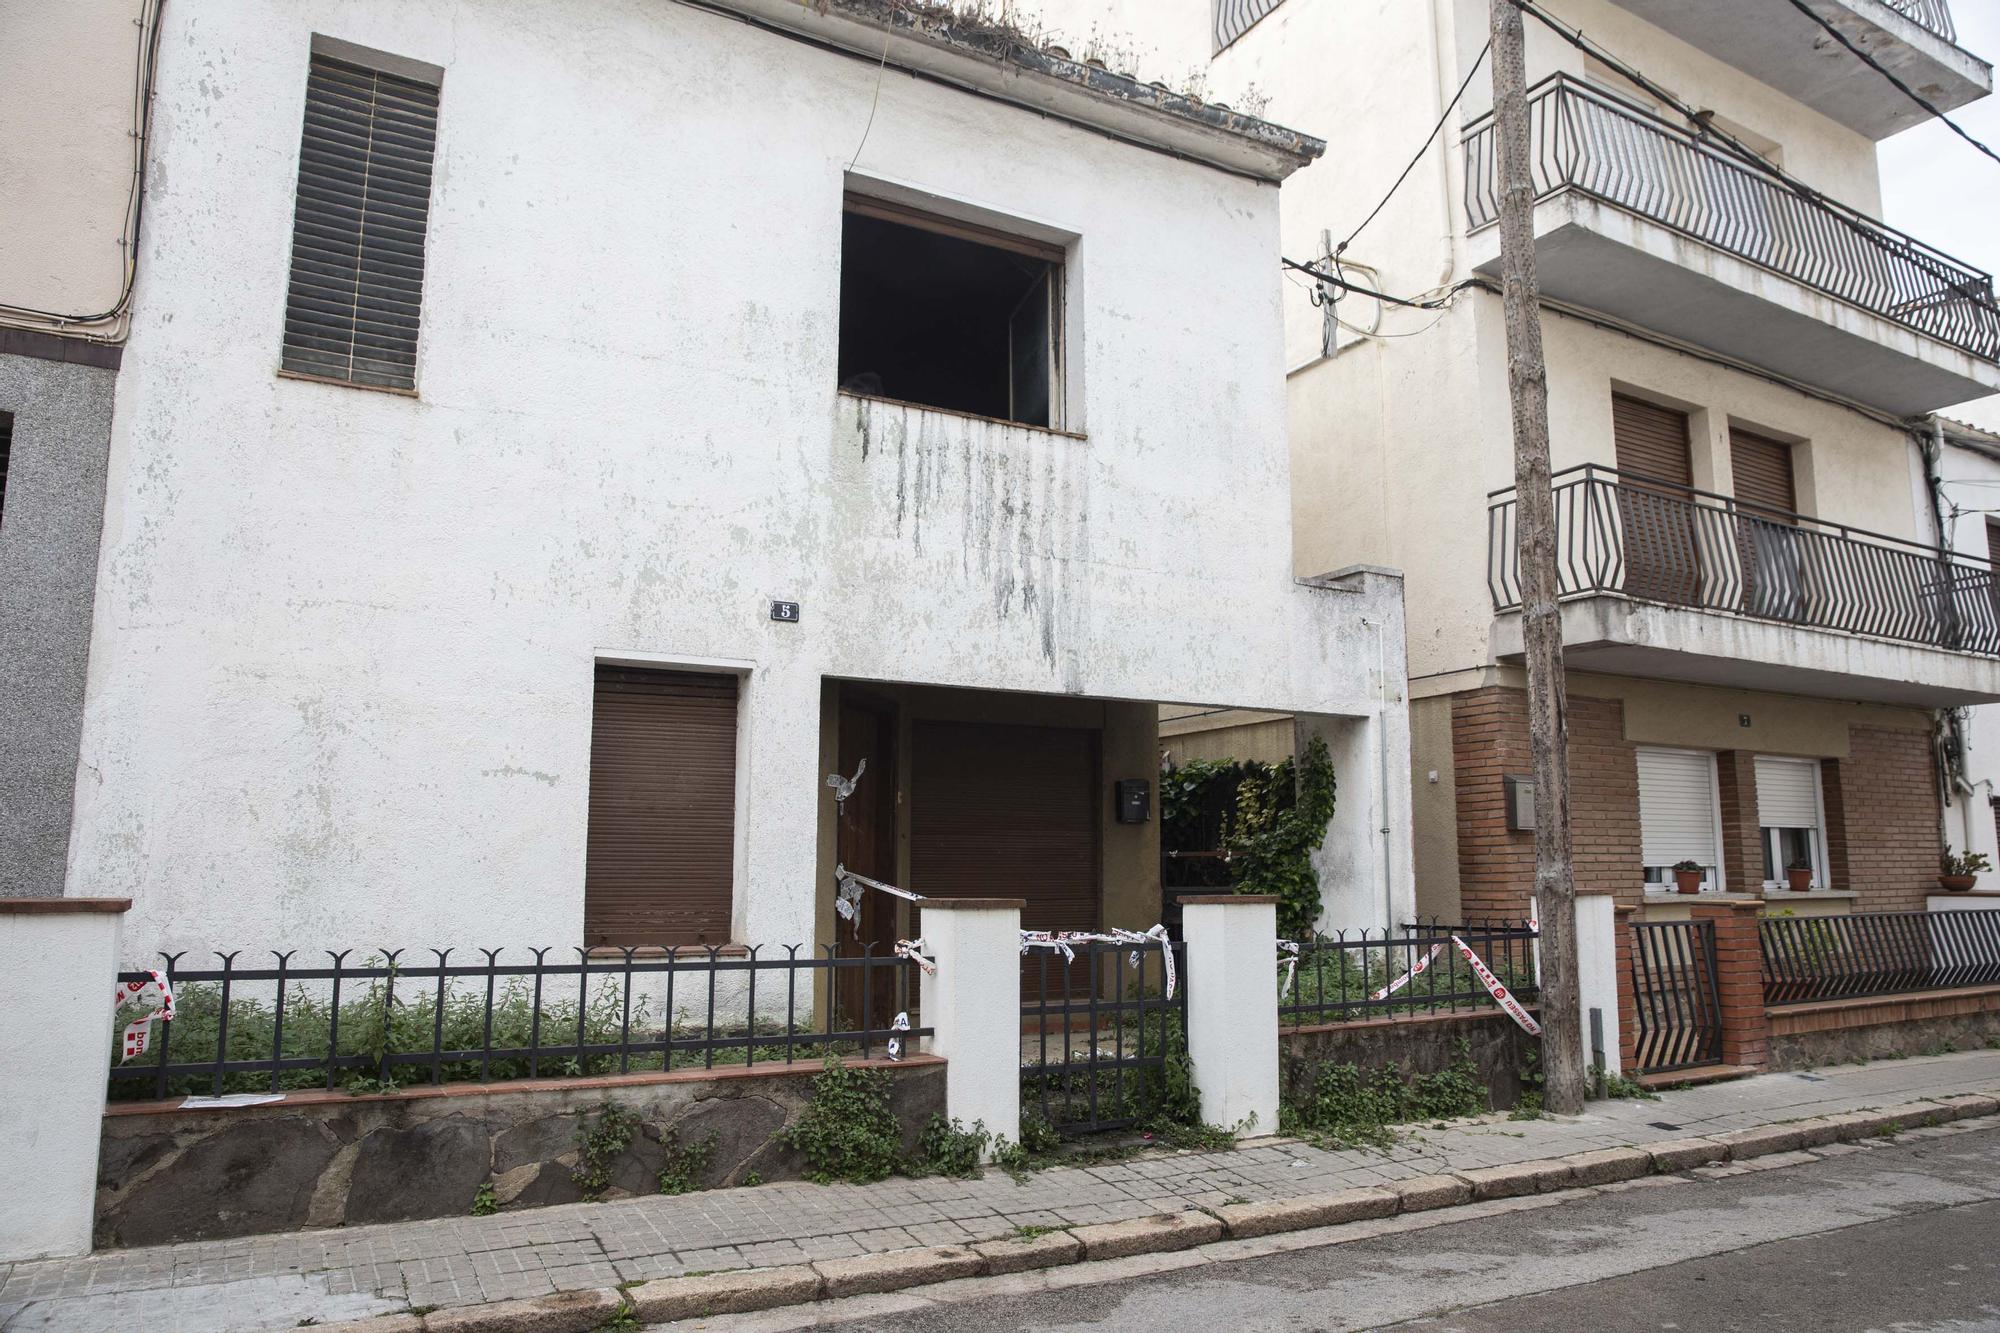 Un incendi en un edifici ocupat de Santa Coloma provoca greus danys estructurals